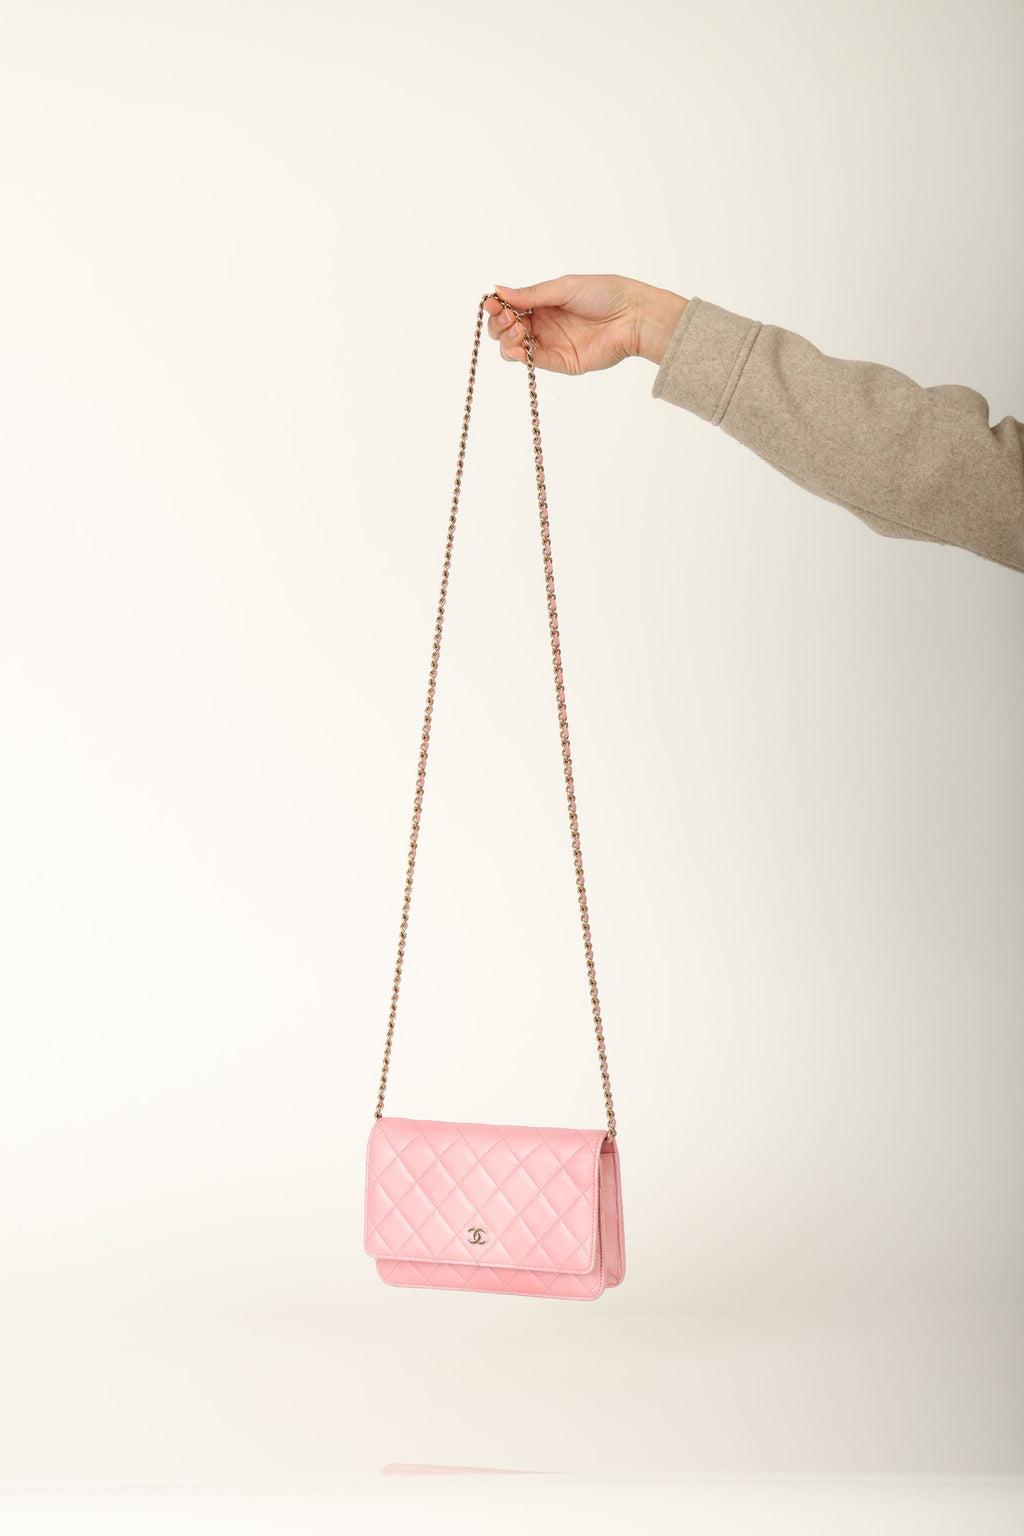 Chanel 23S Iridescent Lambskin Wallet on Chain